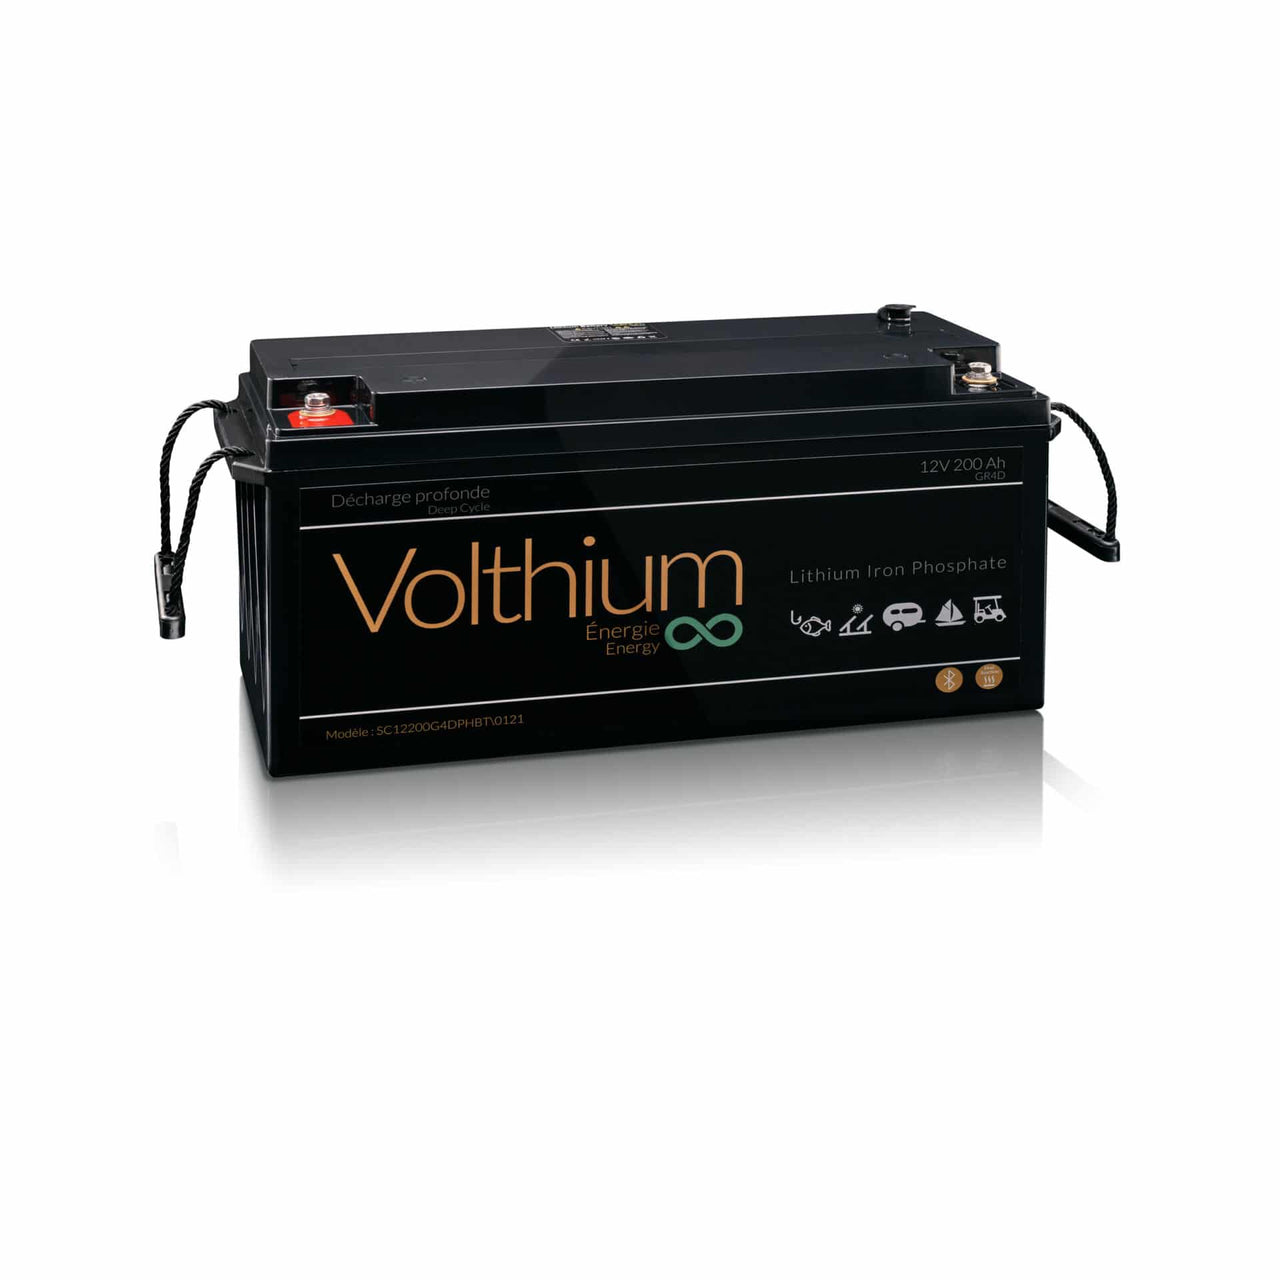 Volthium - Batterie 12V 200AH auto chauffante - 12.8-200-G4DY-CH2O